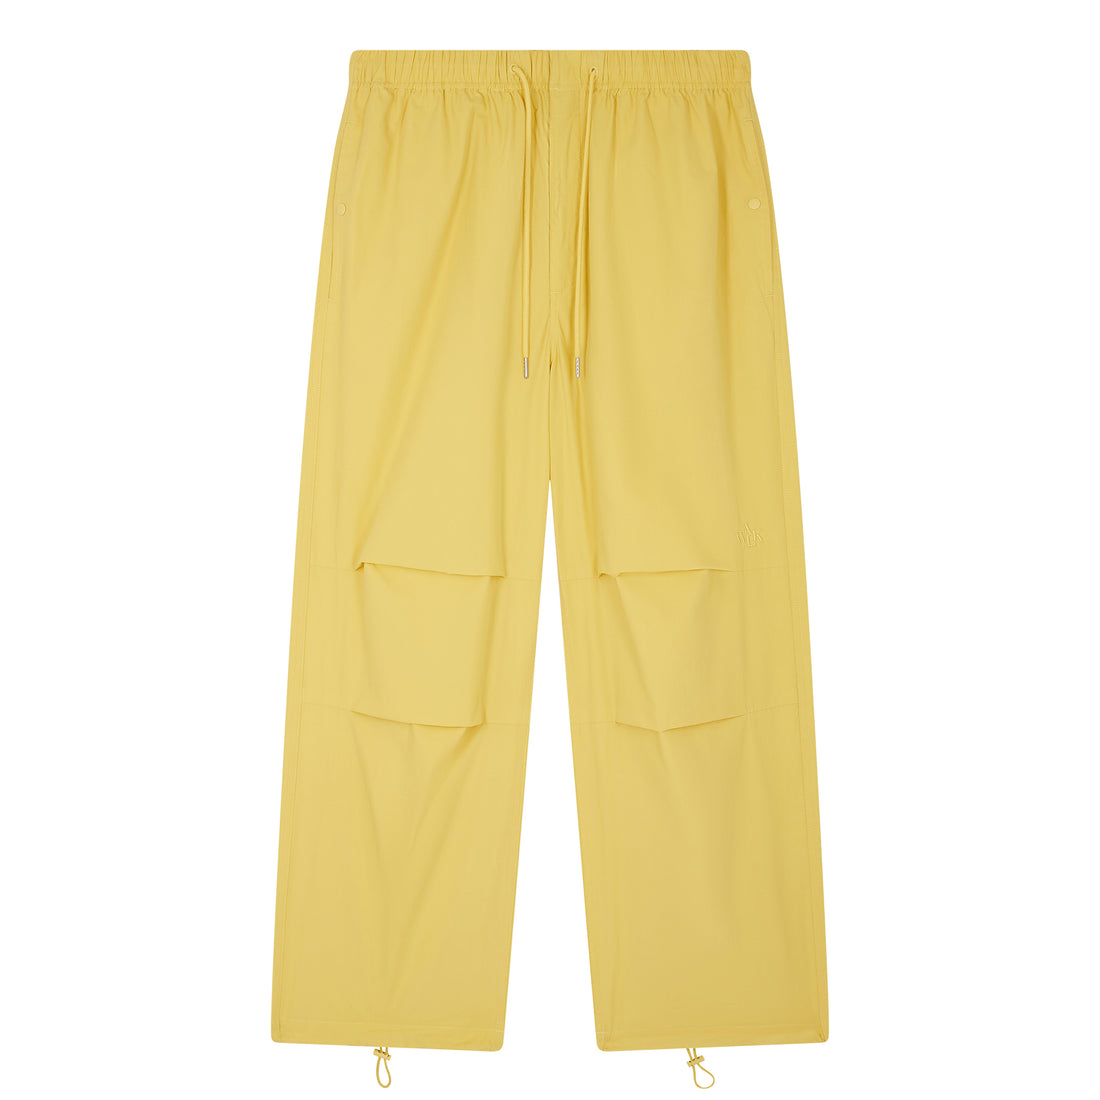 Le pantalon parachute jaune